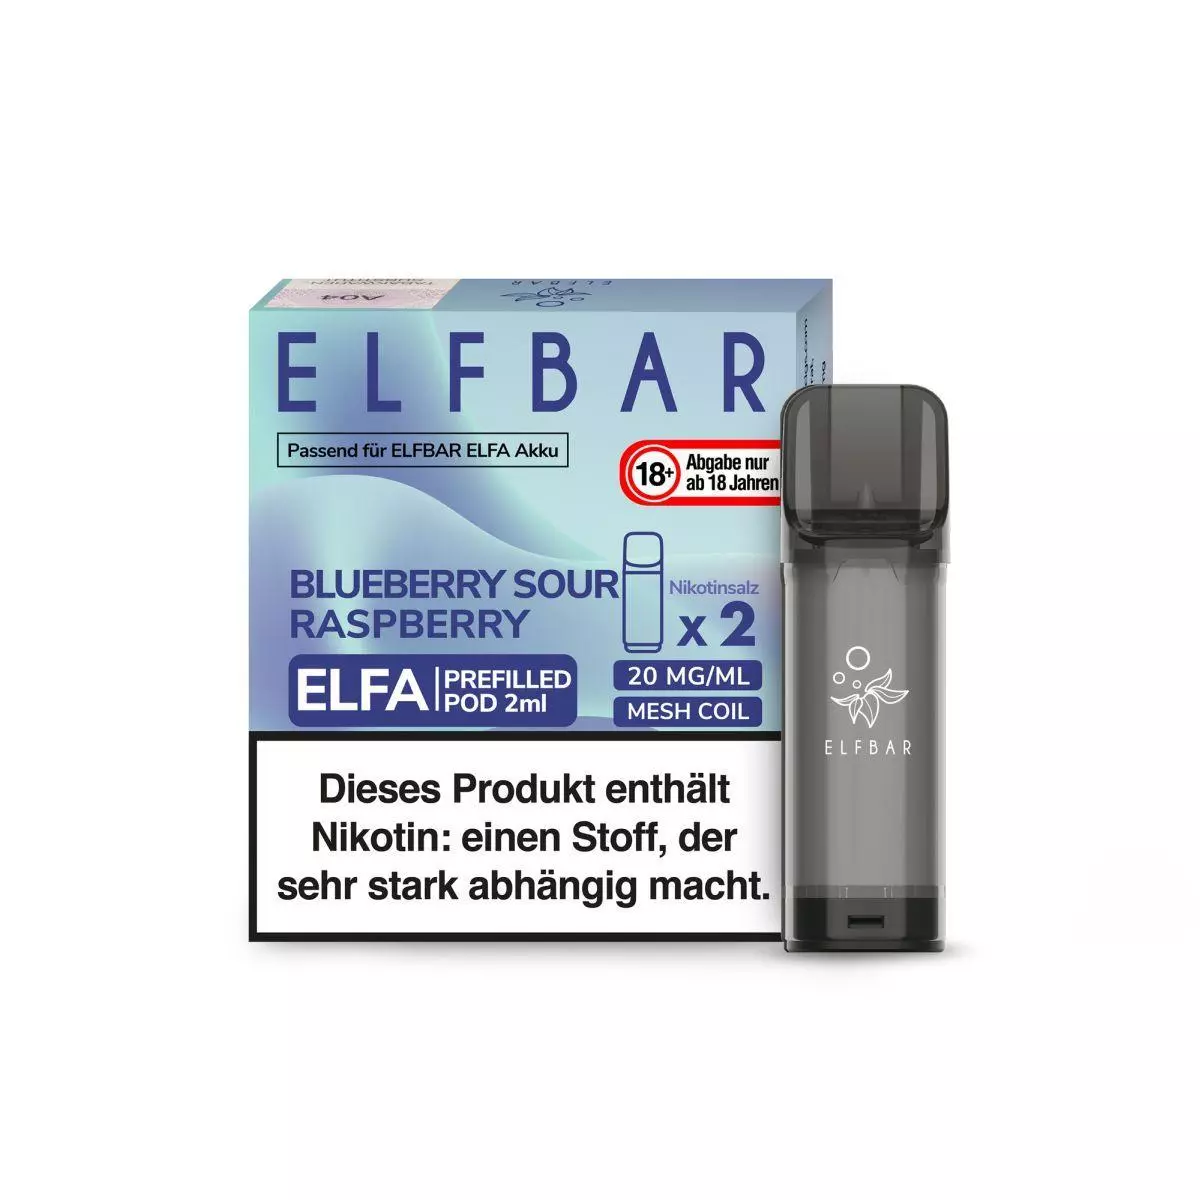 Elfbar Elfa Pod Blueberry Sour Raspberry 20mg/ml Nikotin 1 x 2 Pods